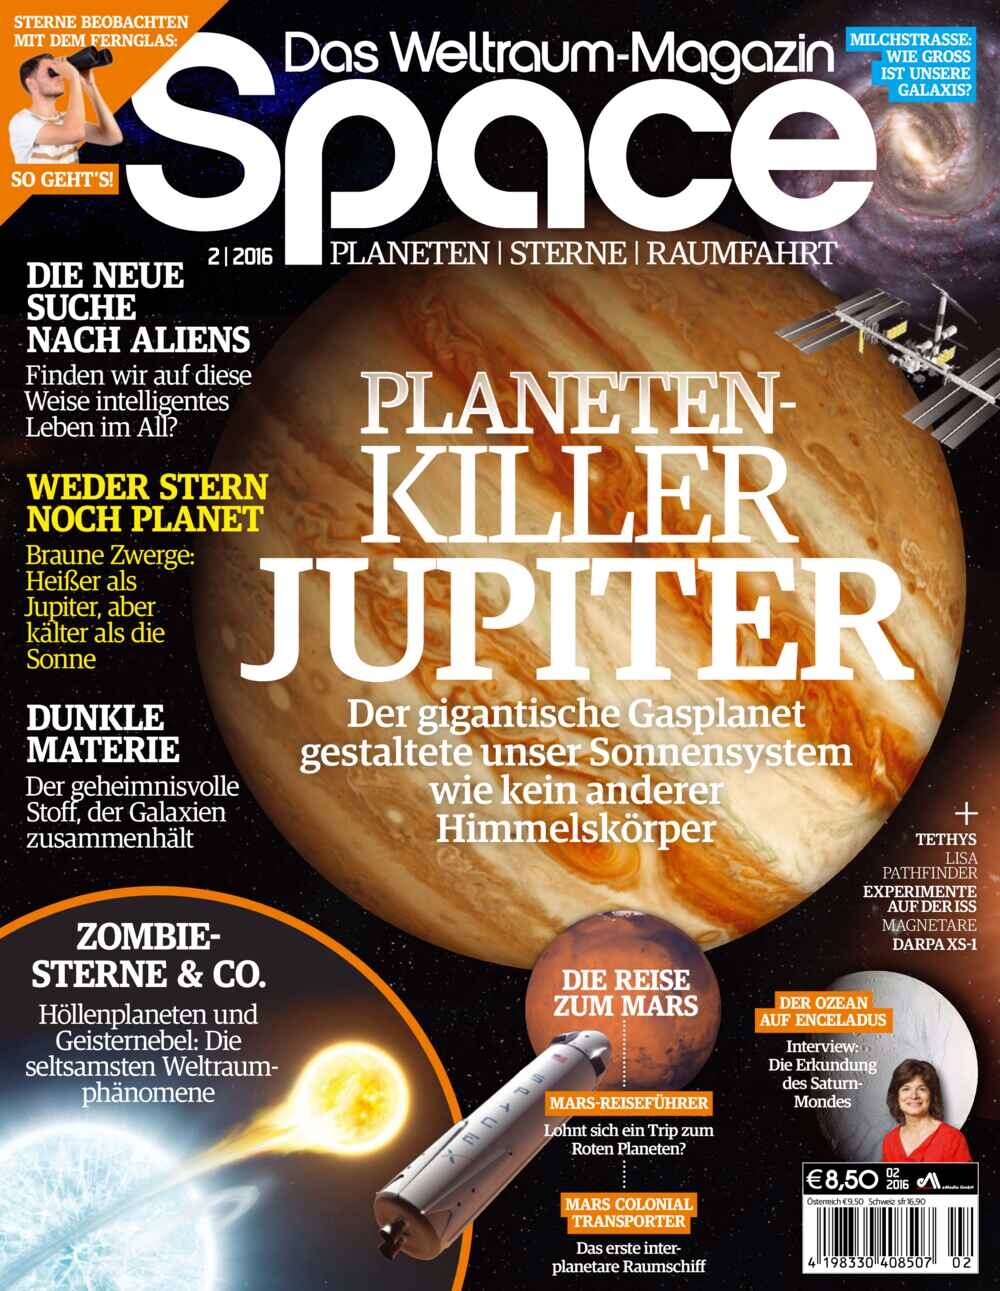 Space, Weltraum Magazin 02/2016